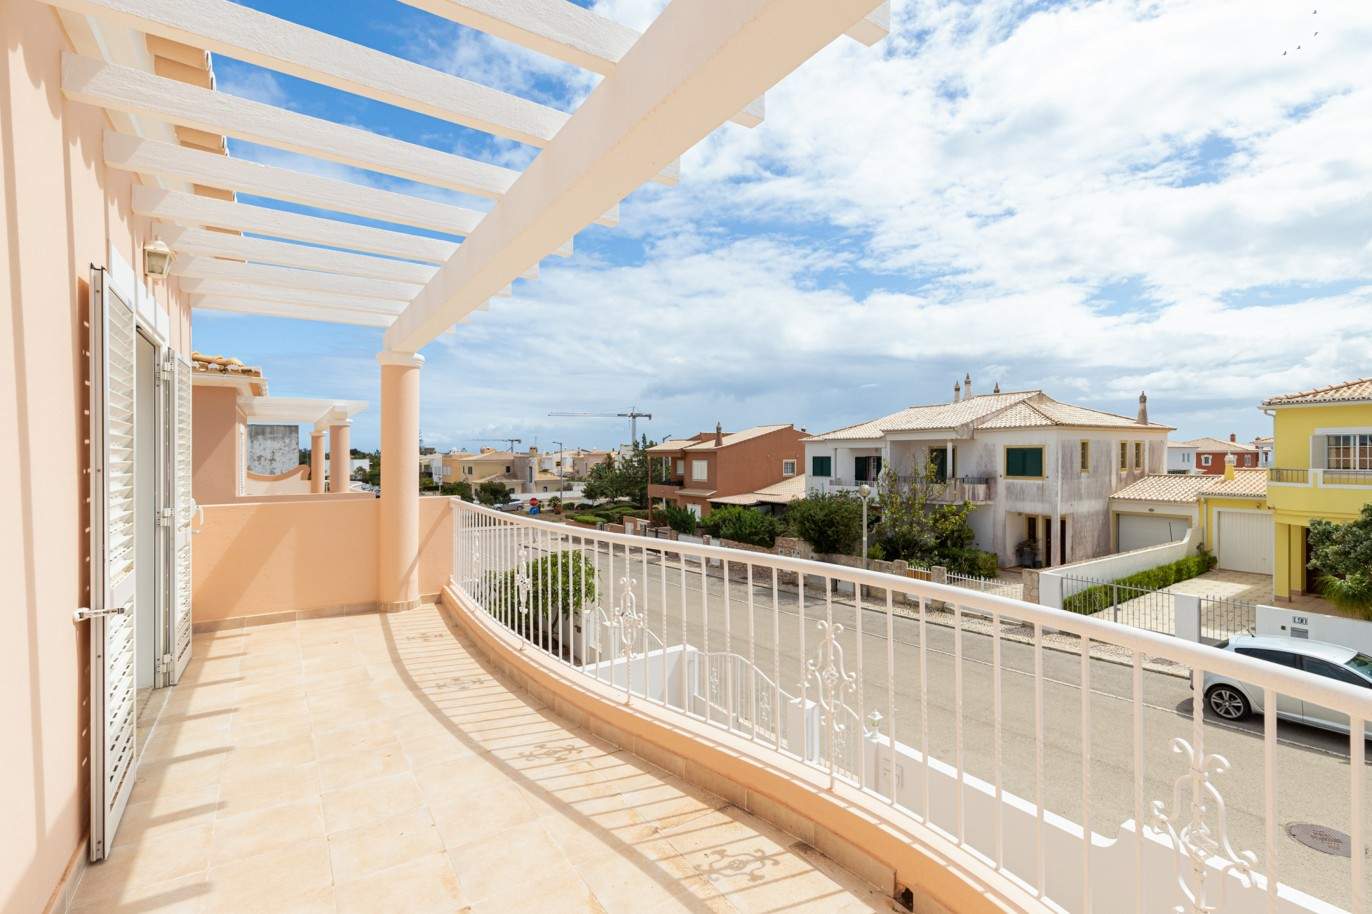 Villa de 3 dormitorios en venta en Porto de Mós, Lagos, Algarve_201782